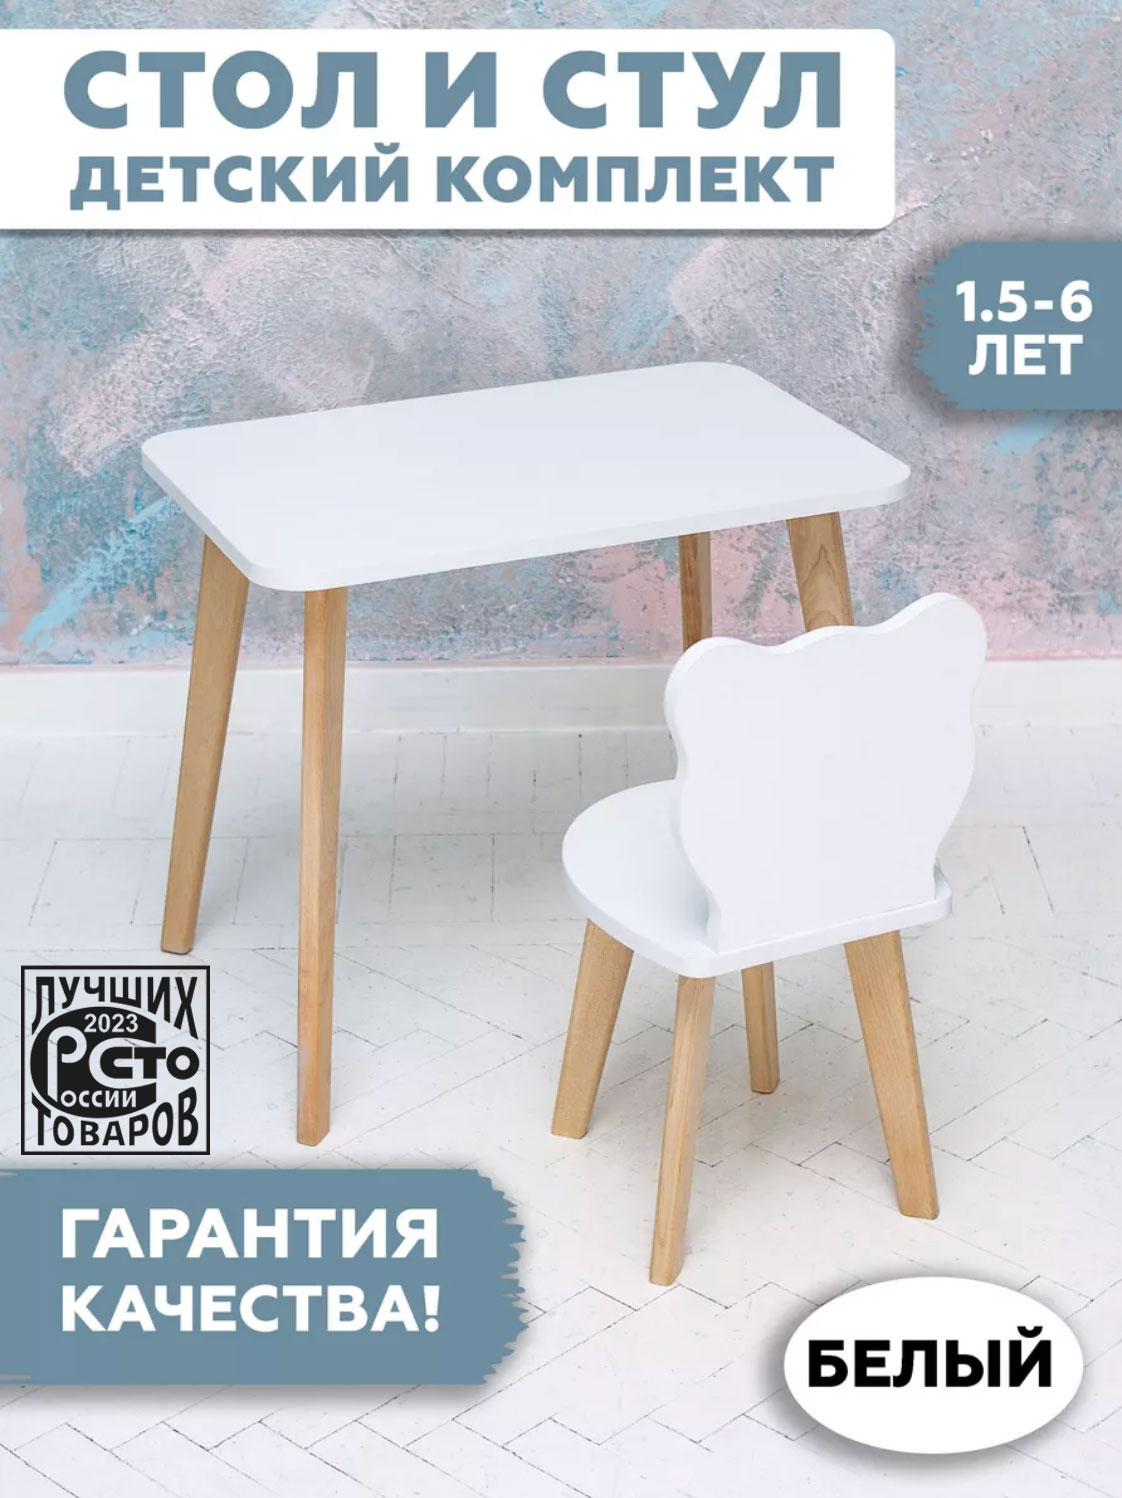 Комплект детской мебели RuLes столик и стульчик мишка 12602